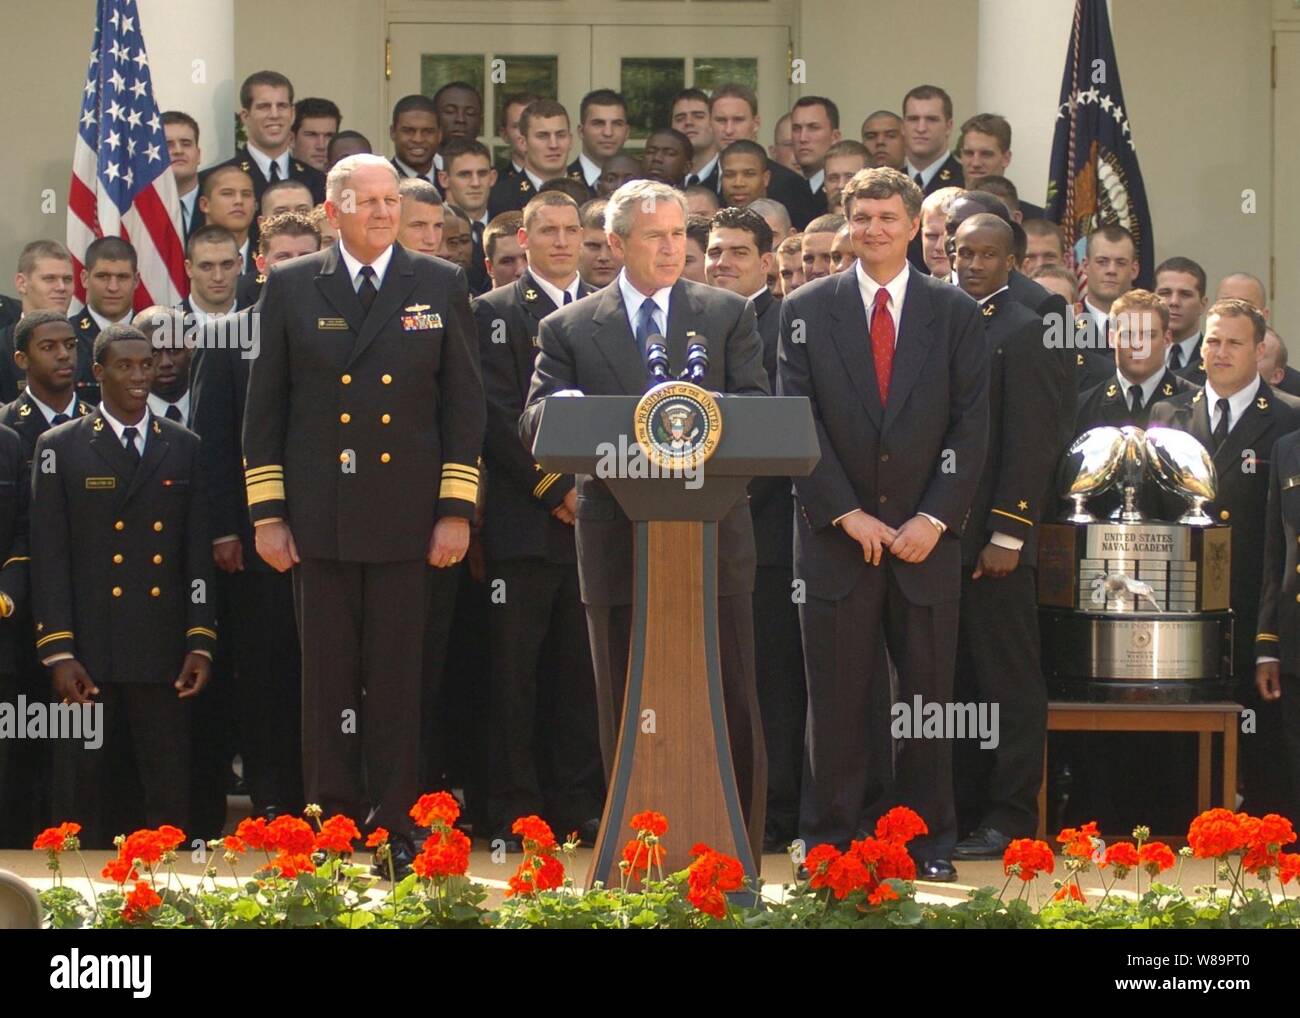 Il Presidente George W Bush offre il suo commento durante la presentazione del Commander-In-Chief's Trofeo ai membri dell'U.S. Naval Academy football team nel corso di una cerimonia alla Casa Bianca il 20 aprile 2005. Bush ha salutato la marina della squadra di calcio per vincere il Commander-In-Chief il trofeo per il secondo anno di fila. Il trofeo va ogni anno la squadra con il miglior record in giochi tra le tre accademie di servizio. La marina ha concluso l'anno con una scuola-registrare la legatura 10 vittorie; segnando la prima volta in 99 anni che la Marina ha vinto 10 giochi di calcio in una sola stagione. Navy beat Air Force 24- Foto Stock